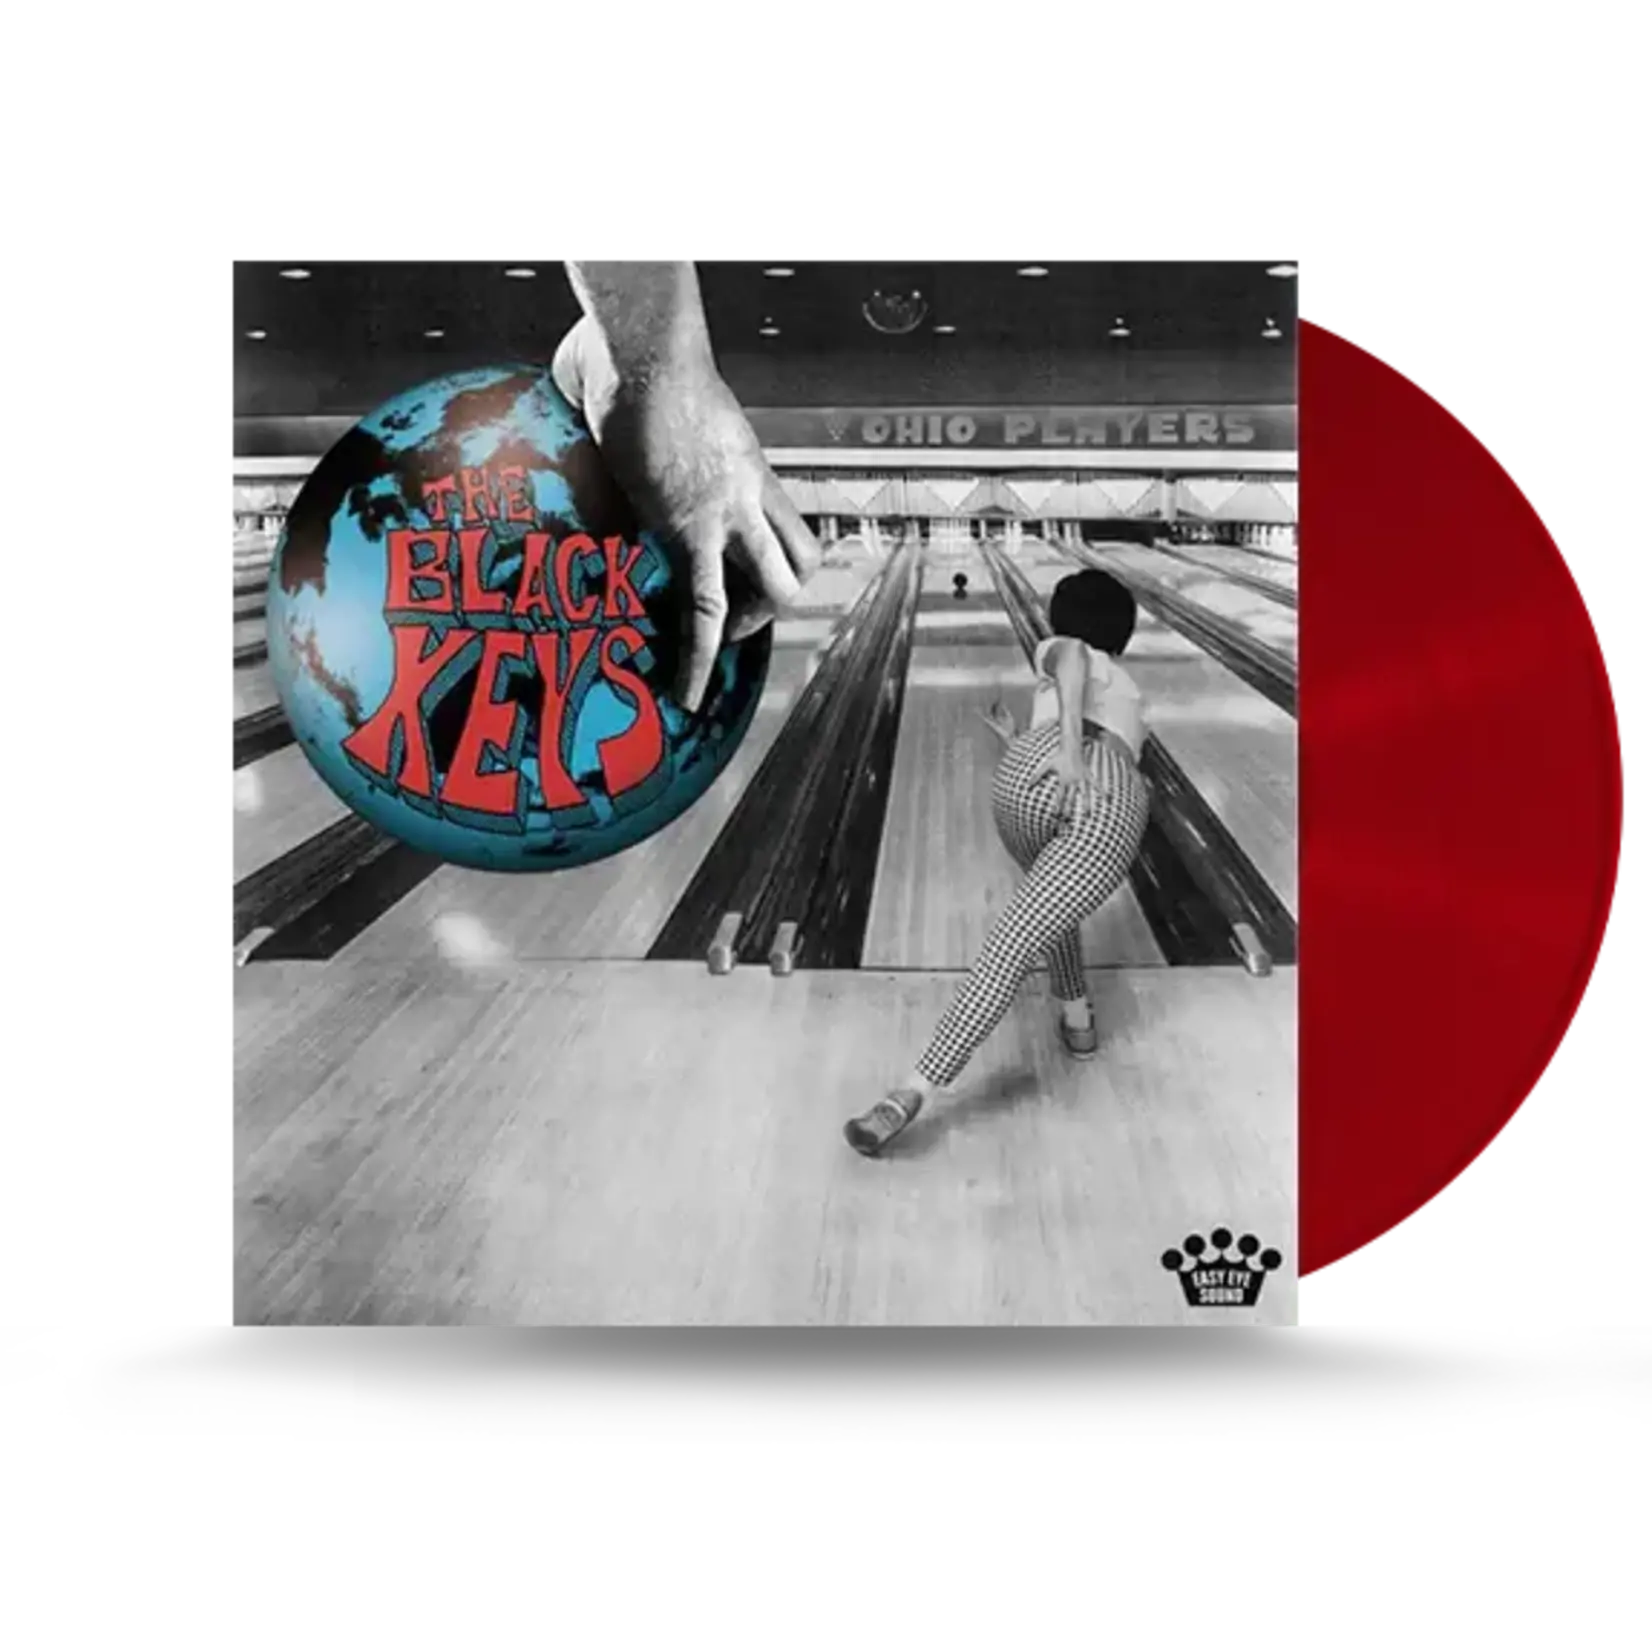 Black Keys - Ohio Players (Indie Red Vinyl) [LP]